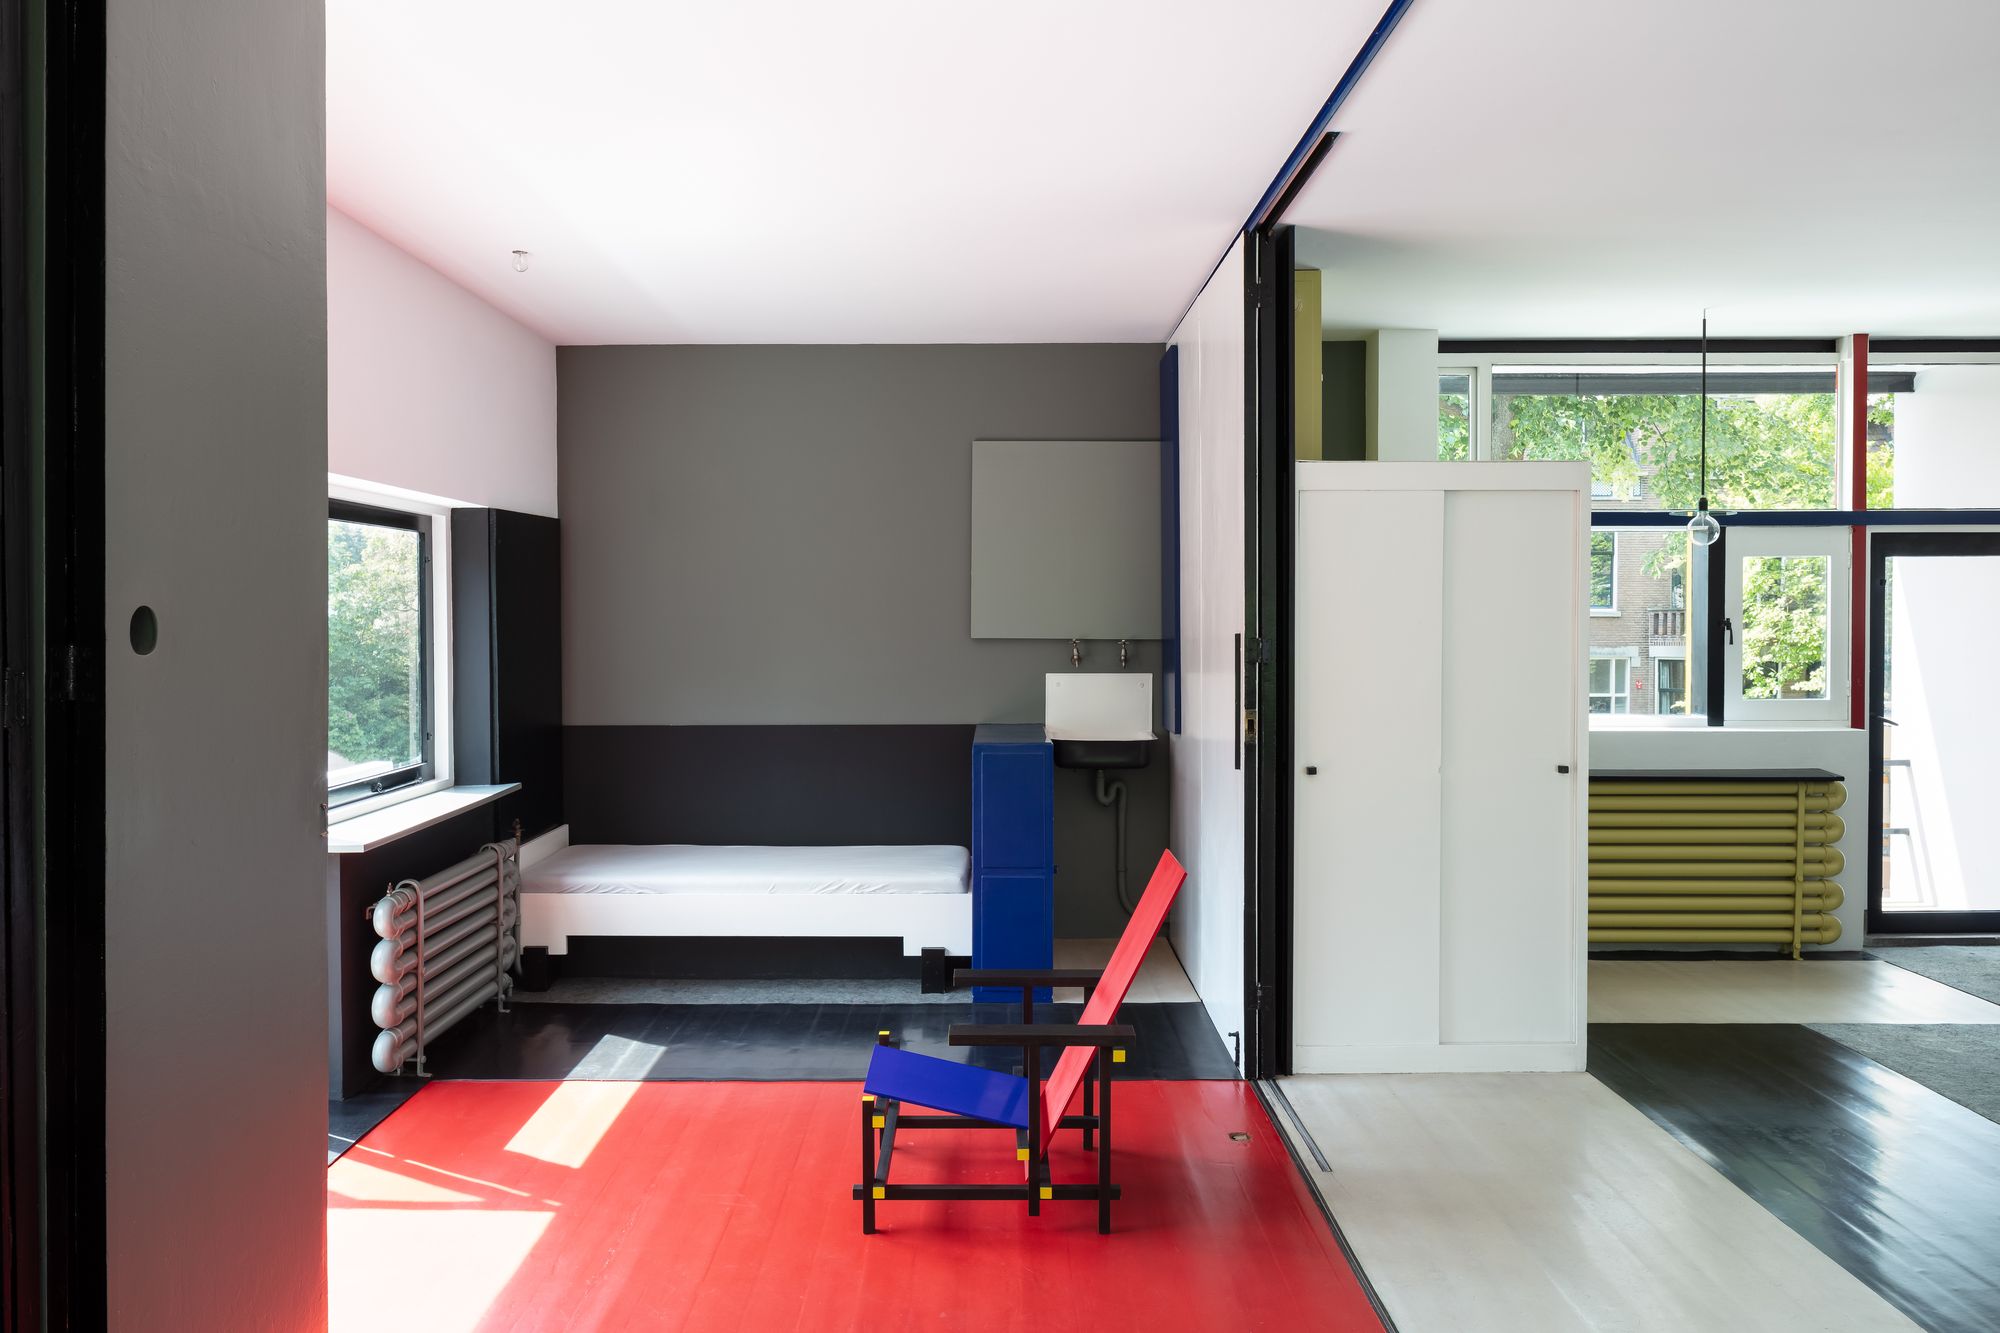 荷兰风格派(De Stijl)室内设计作品欣赏(4) - 设计之家